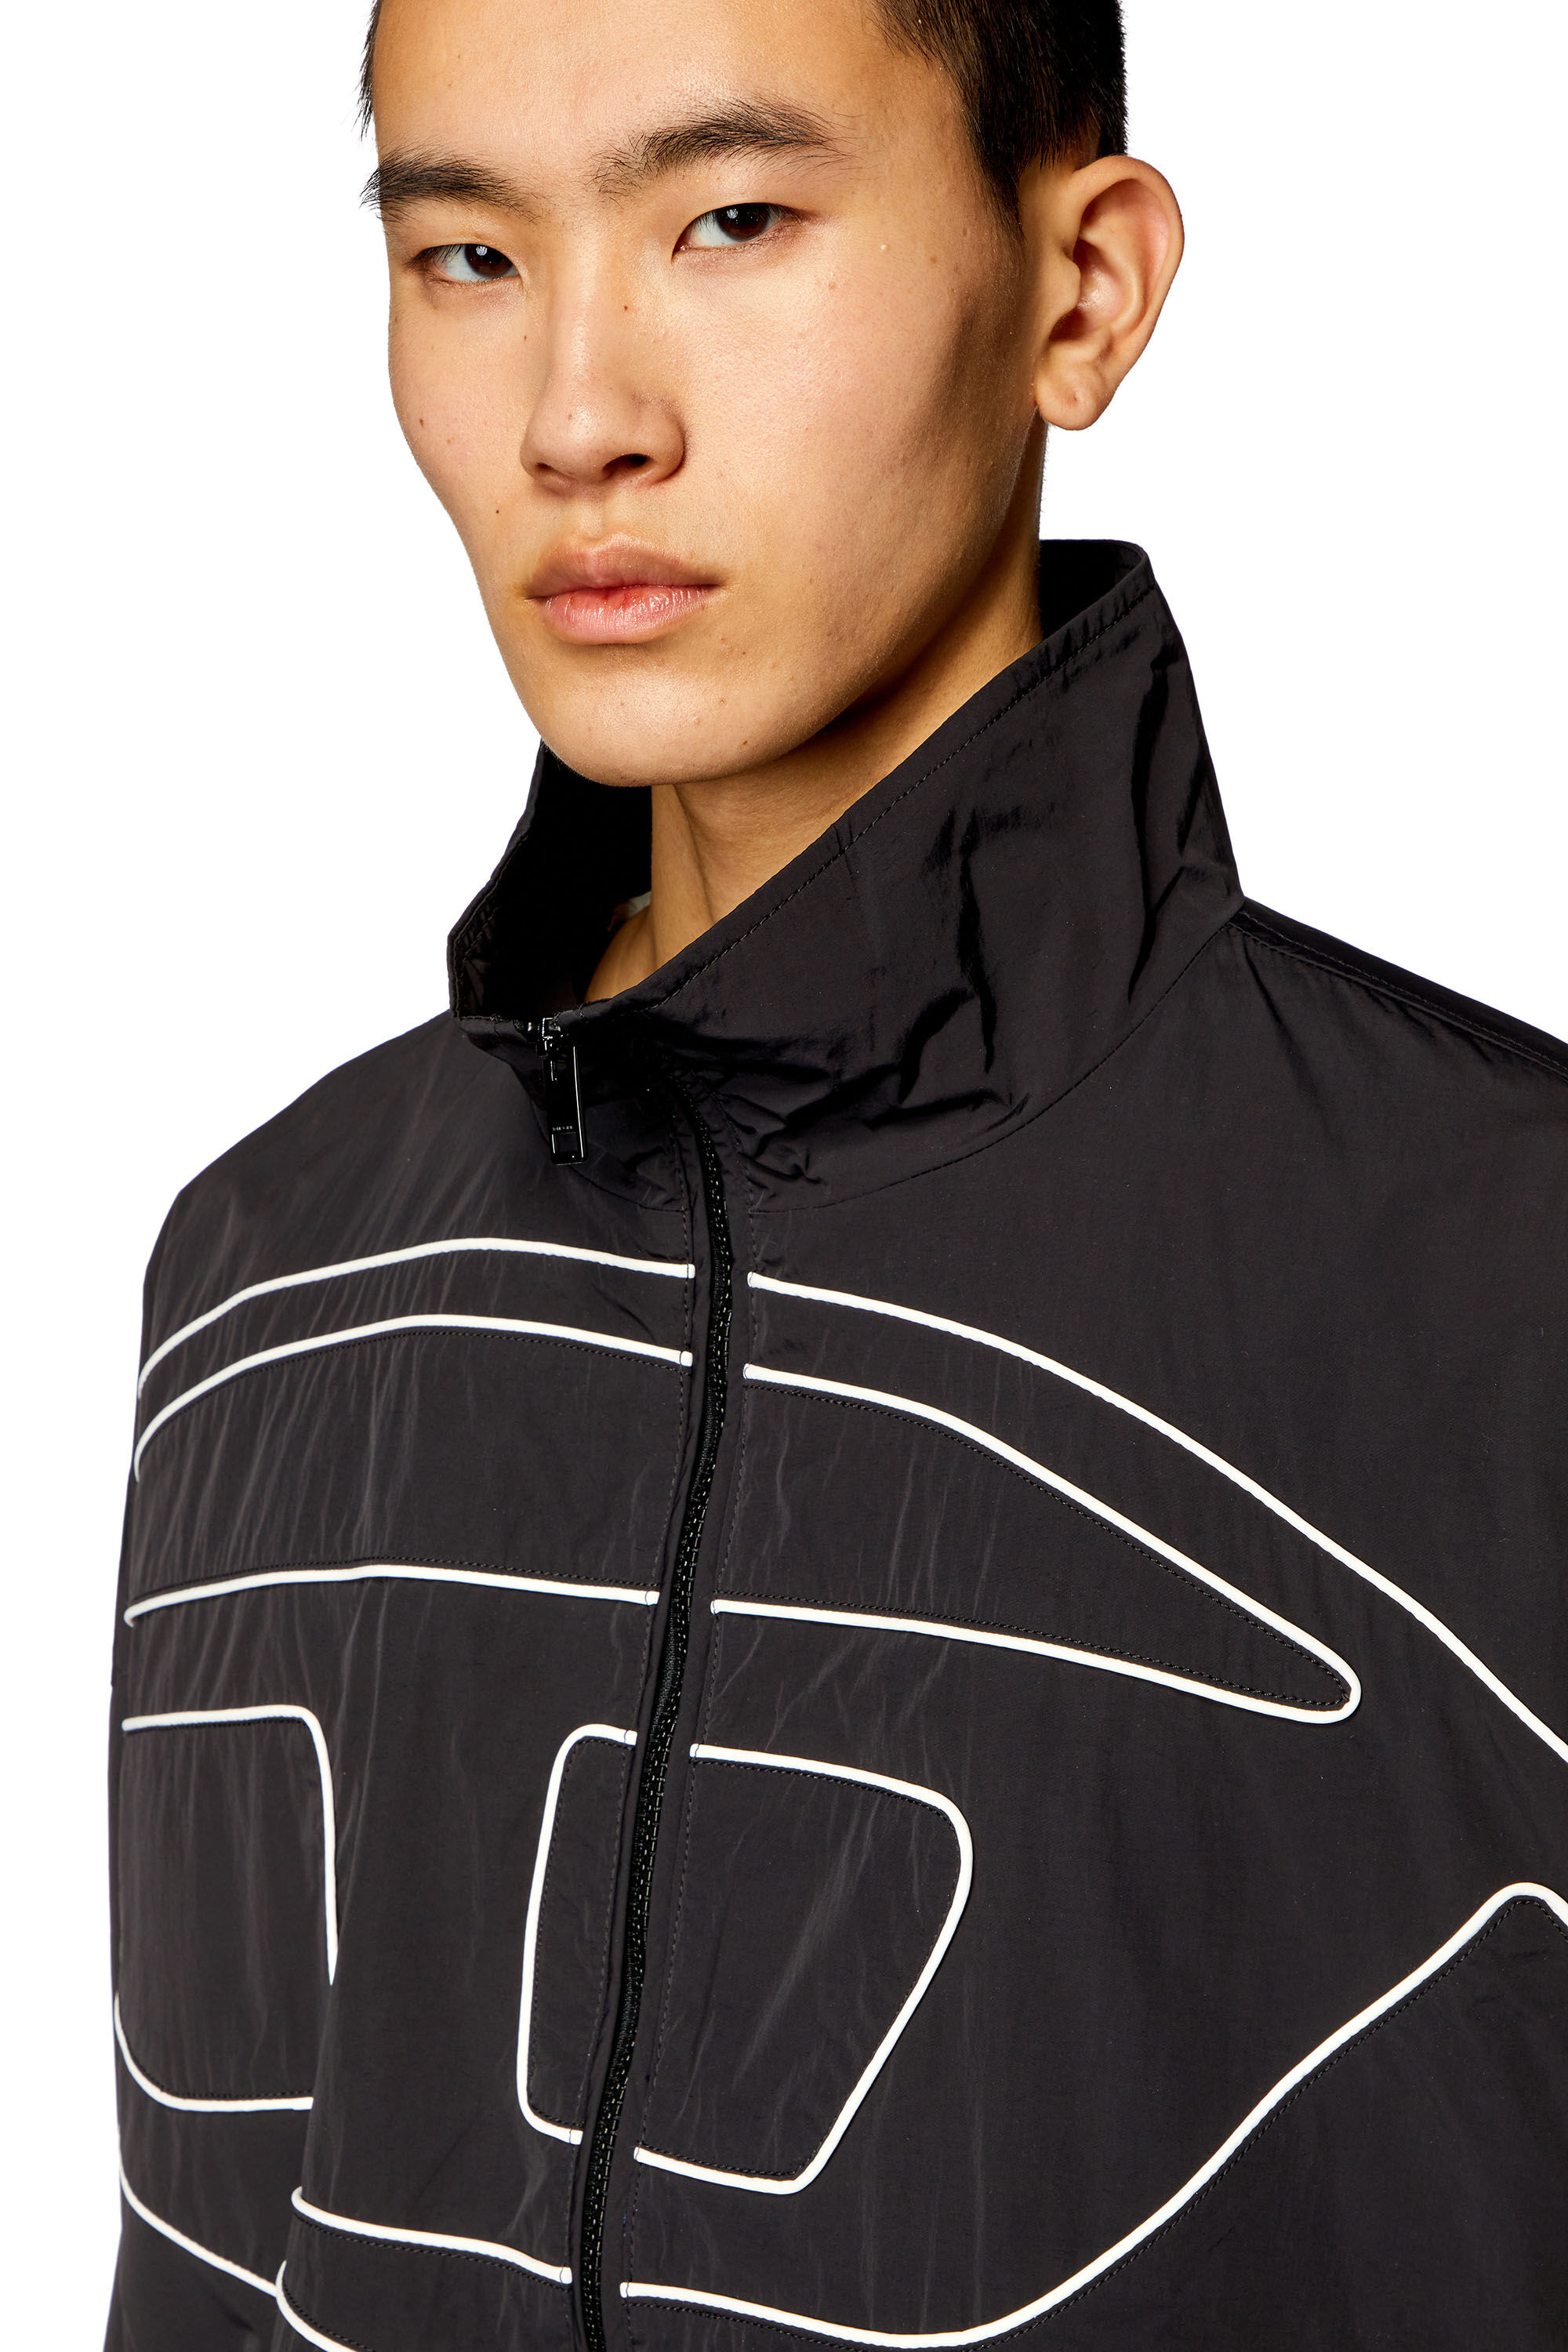 Men's Taslan jacket with piped Oval D | Black | Diesel